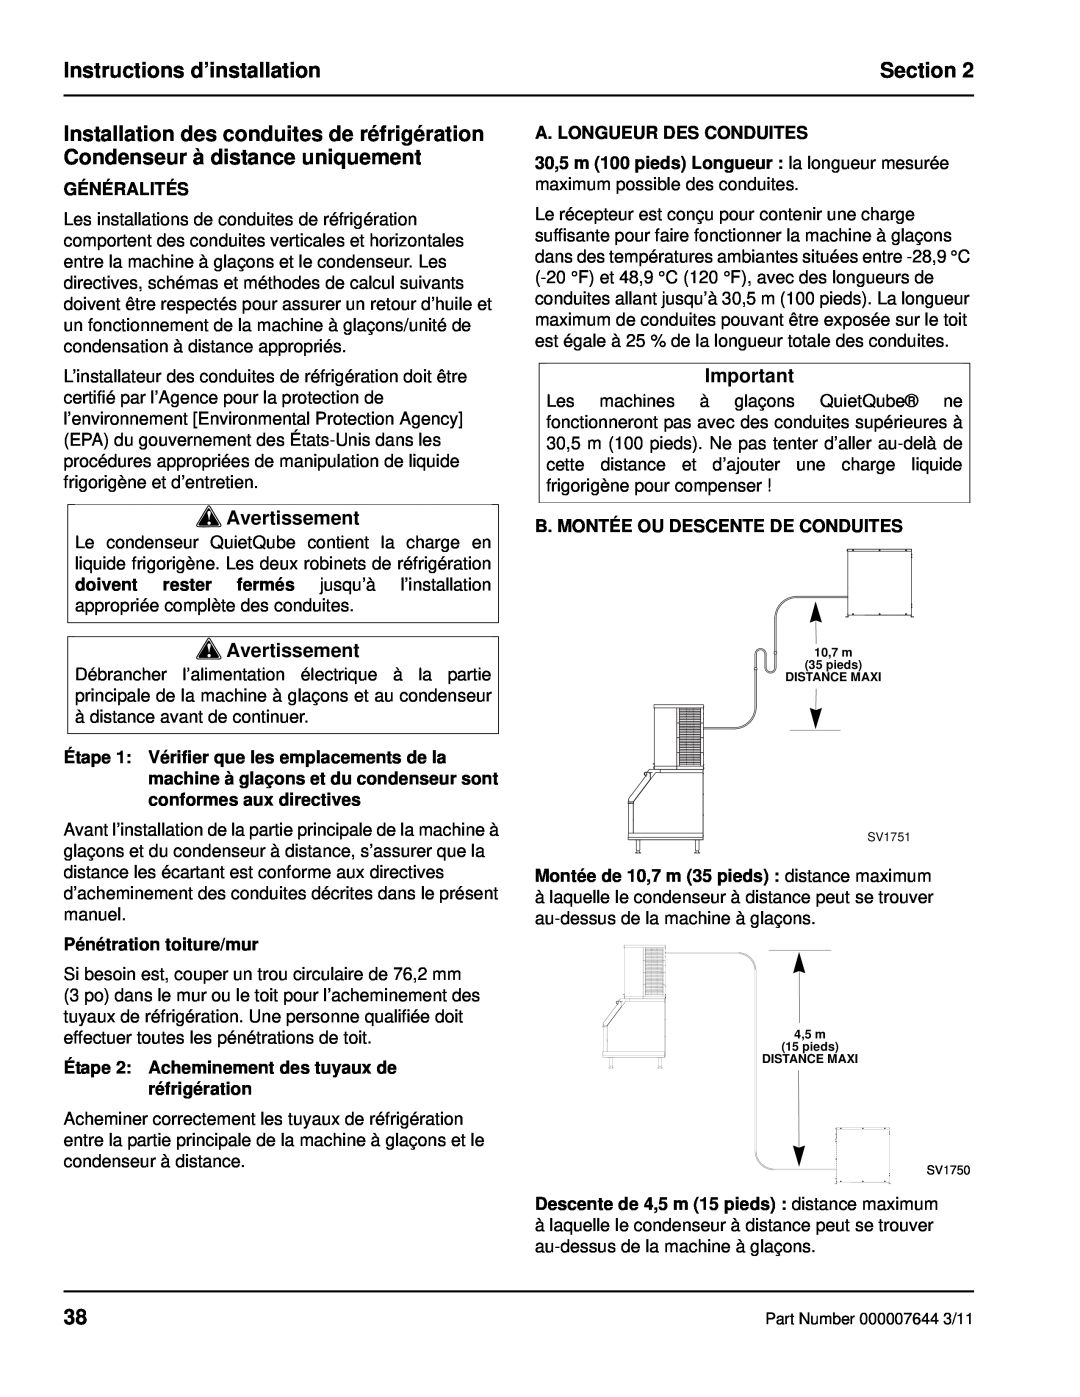 Manitowoc Ice RF manual Instructions d’installation, Section, Avertissement, Généralités, Pénétration toiture/mur 